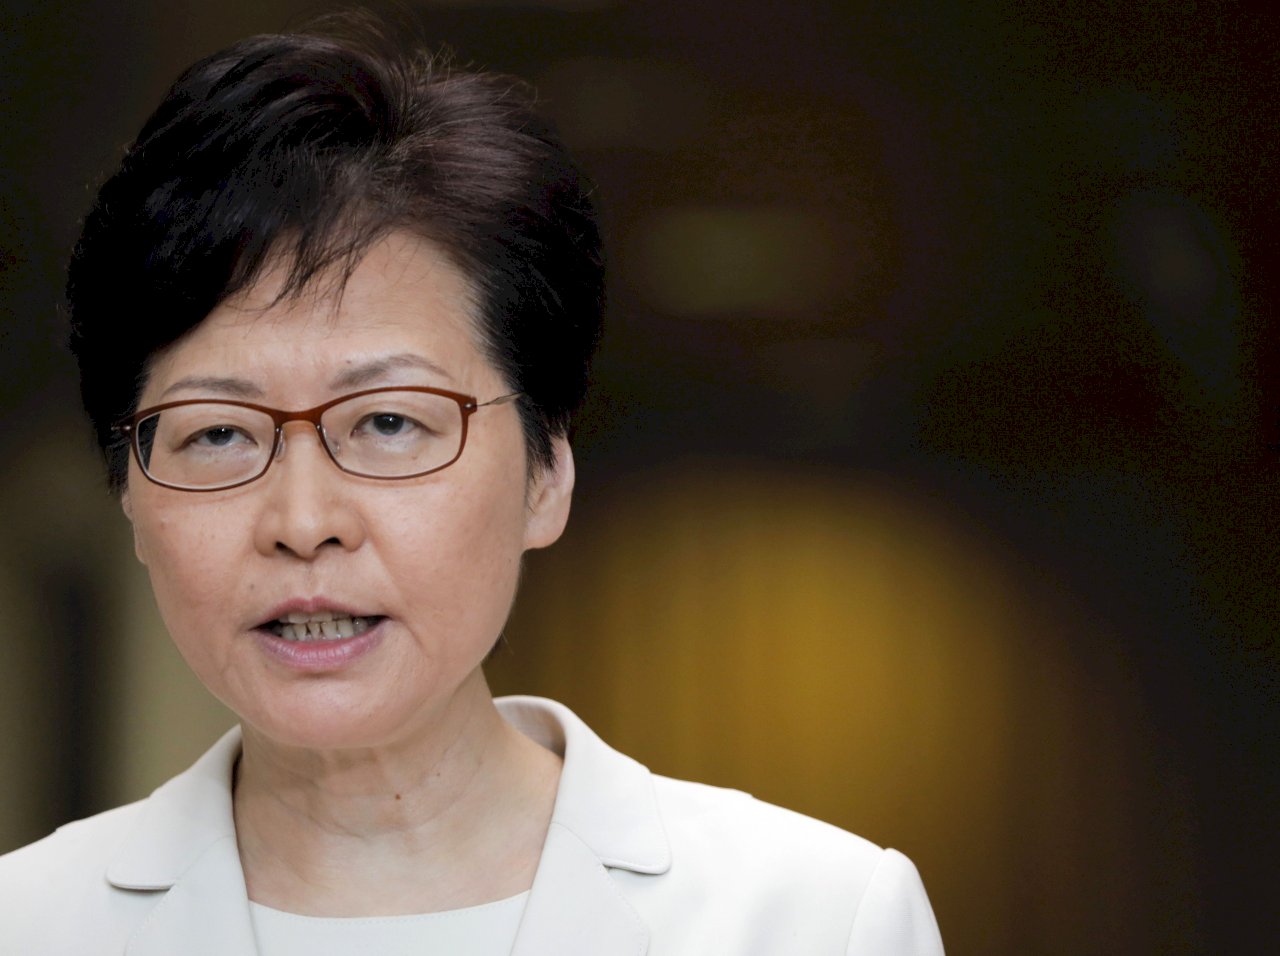 林鄭月娥回應惠譽降香港信評 稱暴力是影響主因